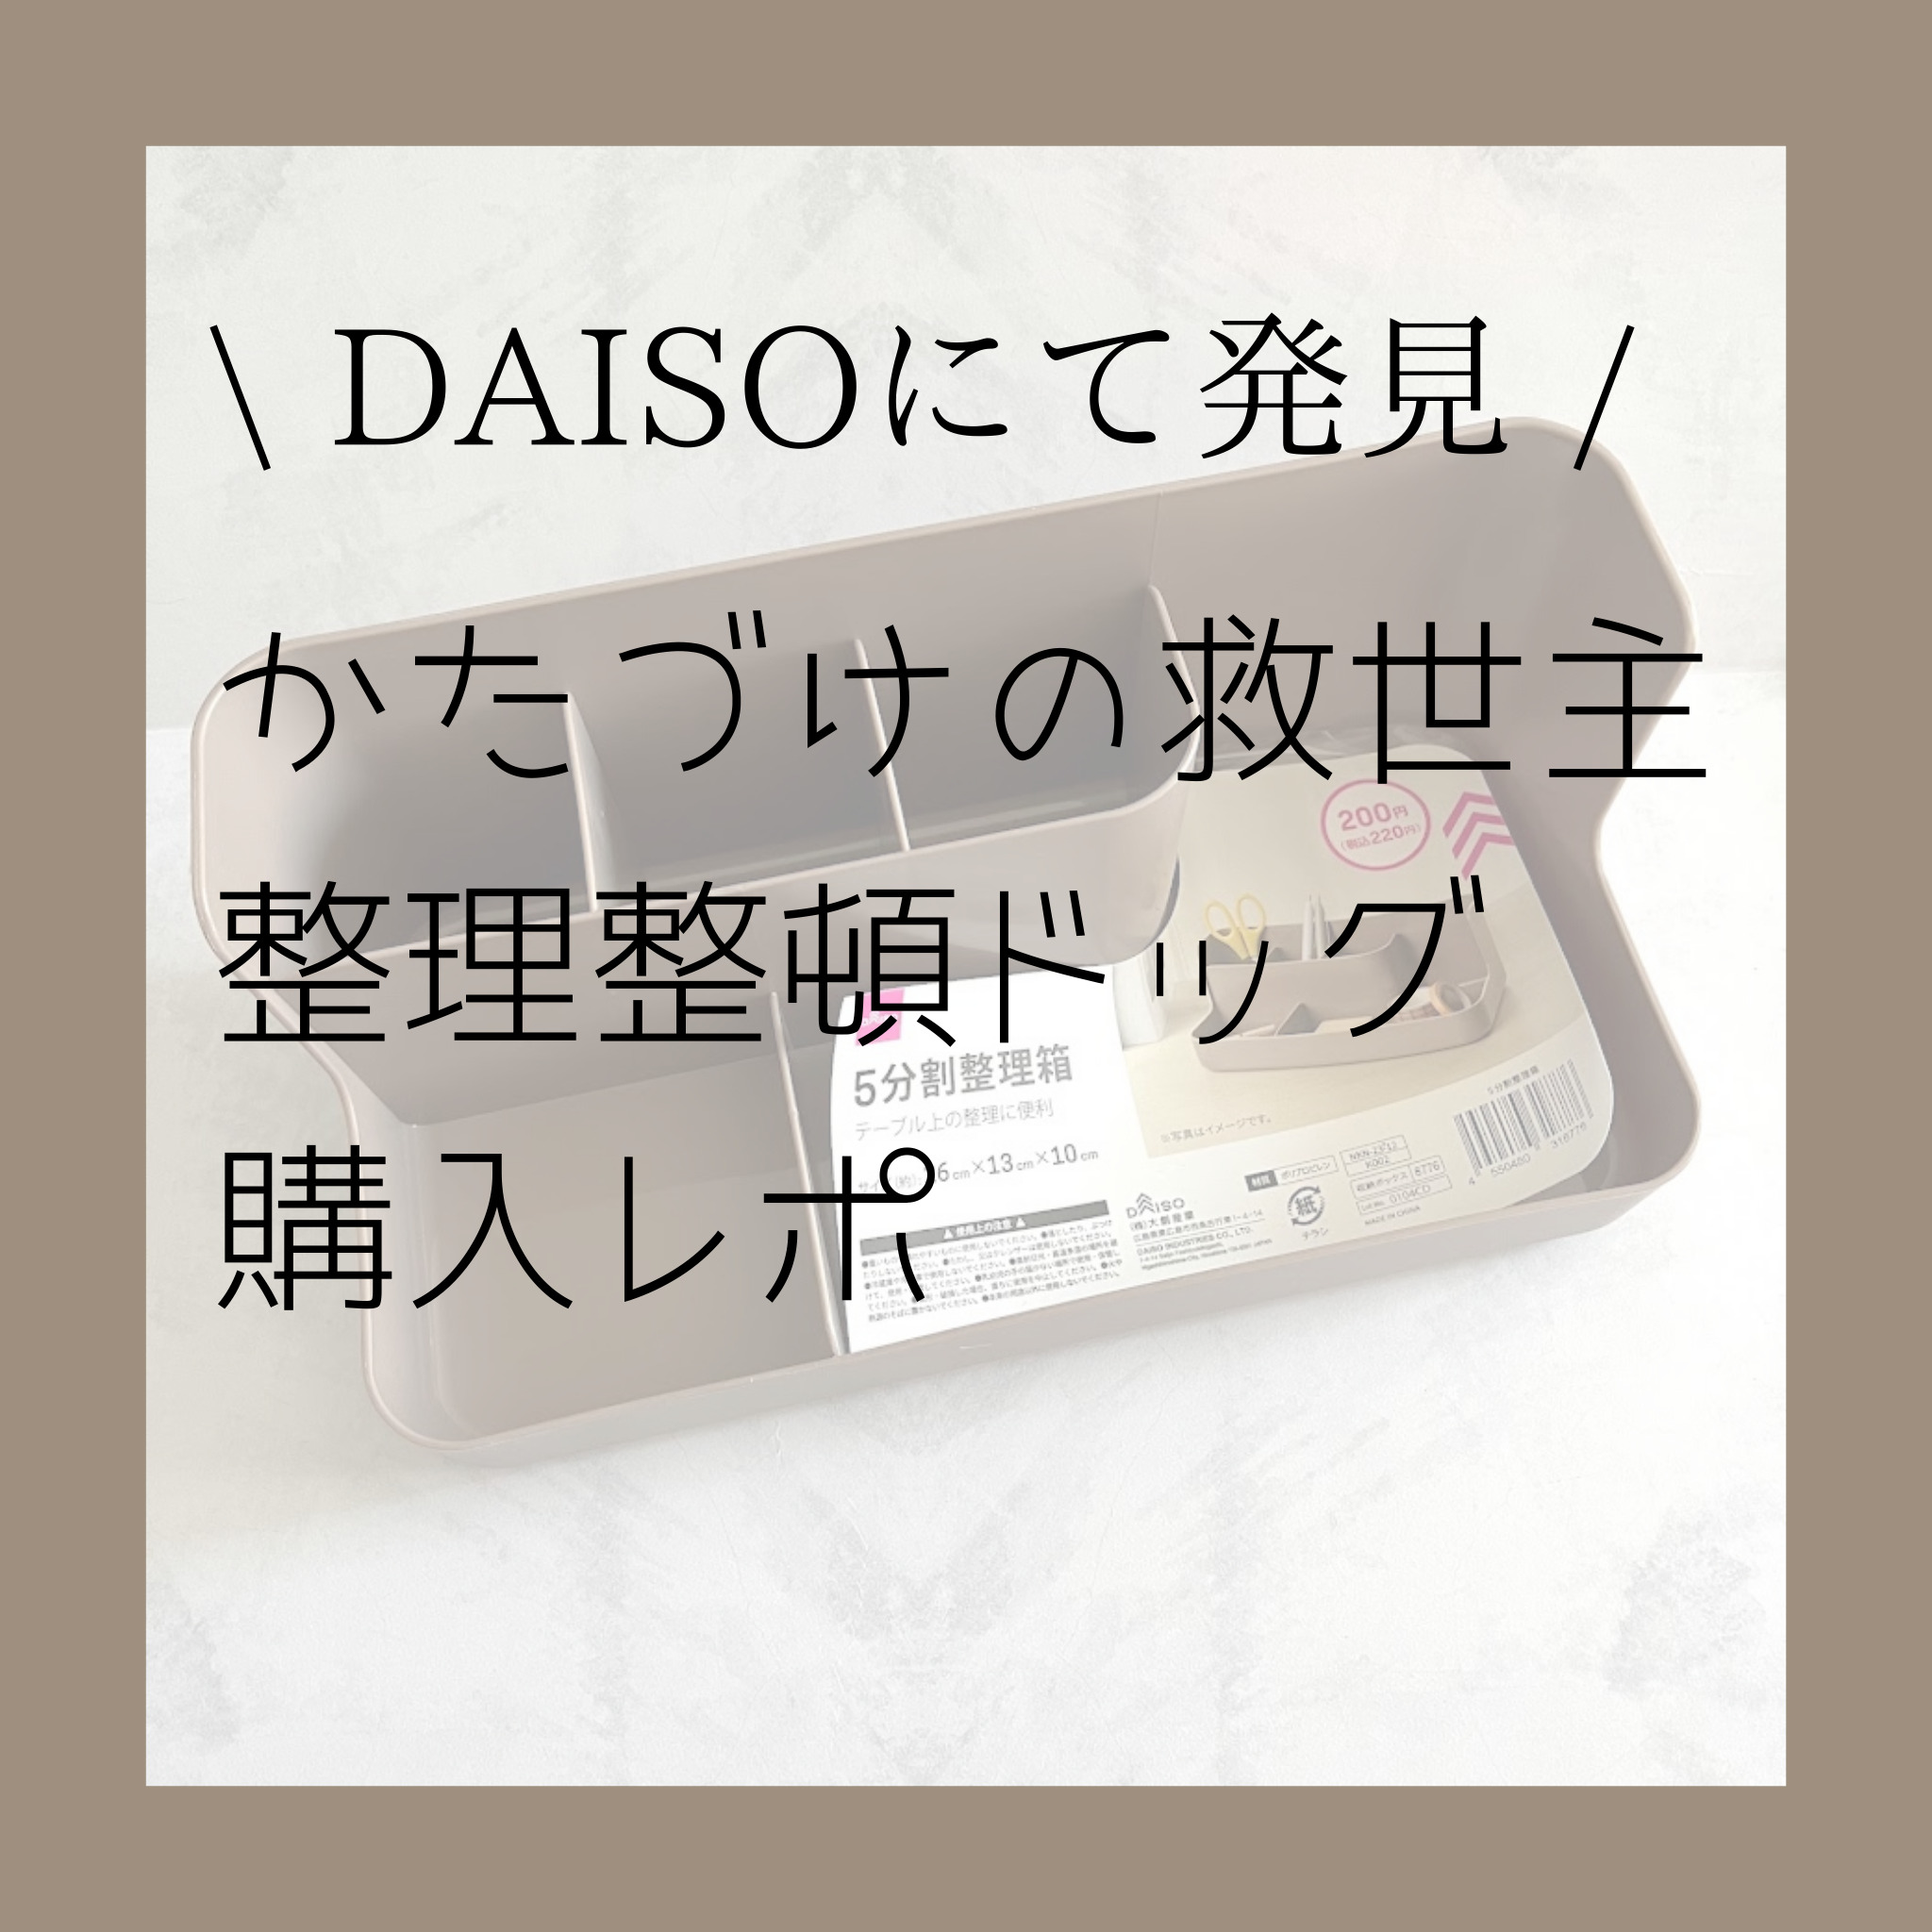 DAISO【ぜったい整頓できる説】収納ドッグ発見